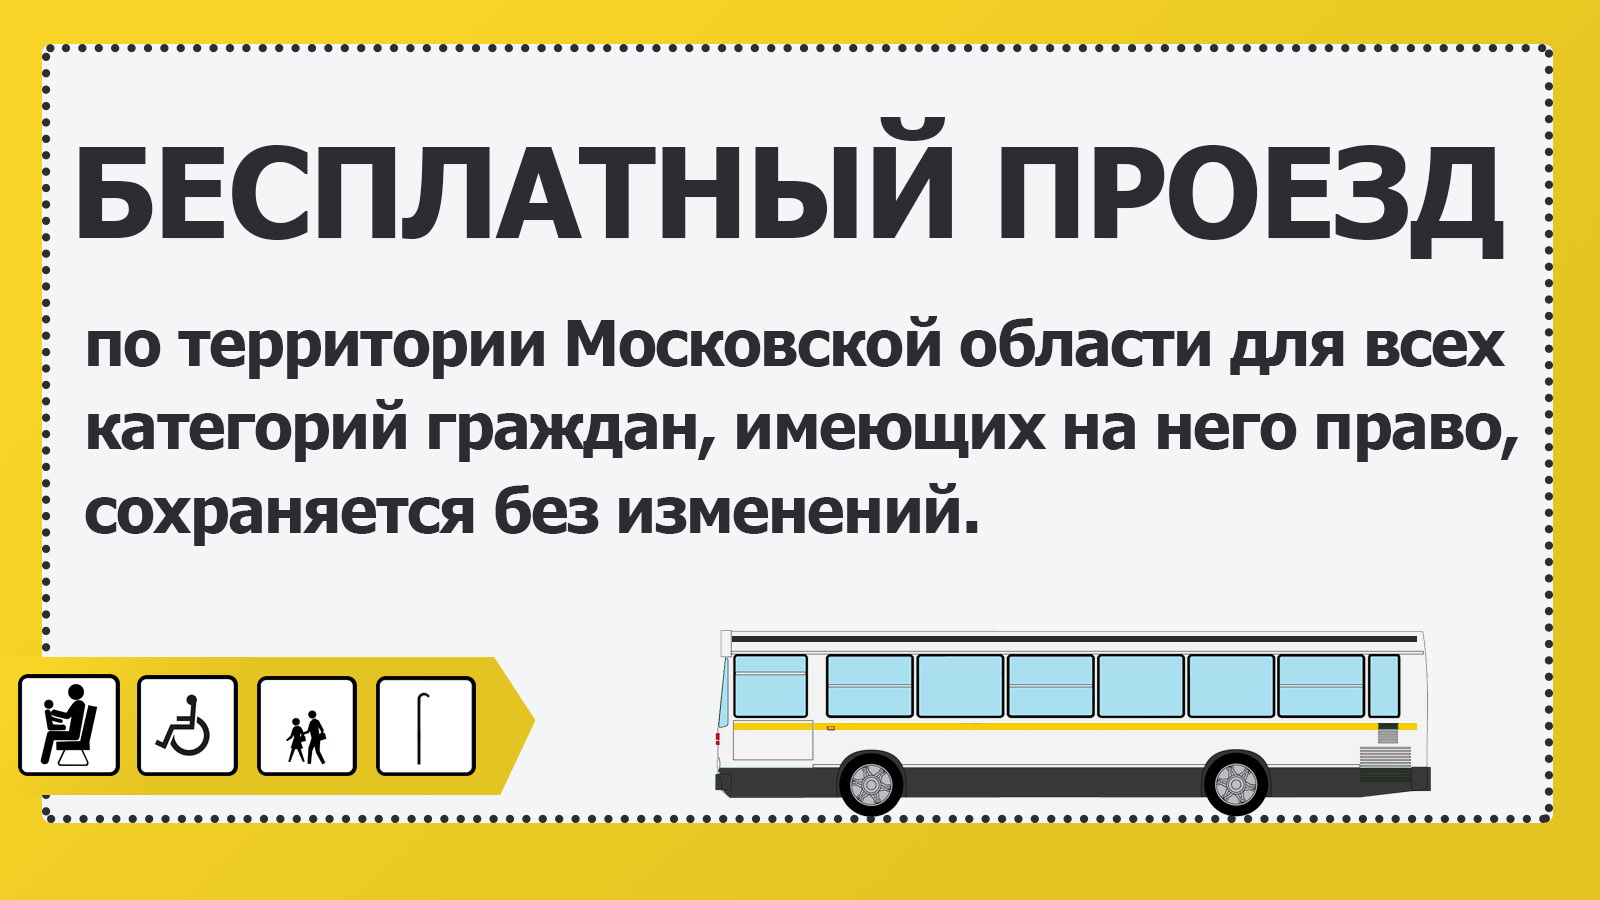 Можно ли ездить в московской области. Маршрутки по социальной карте. Льготный проезд в автобусе. Автобус льготы. Карта для бесплатного проезда.